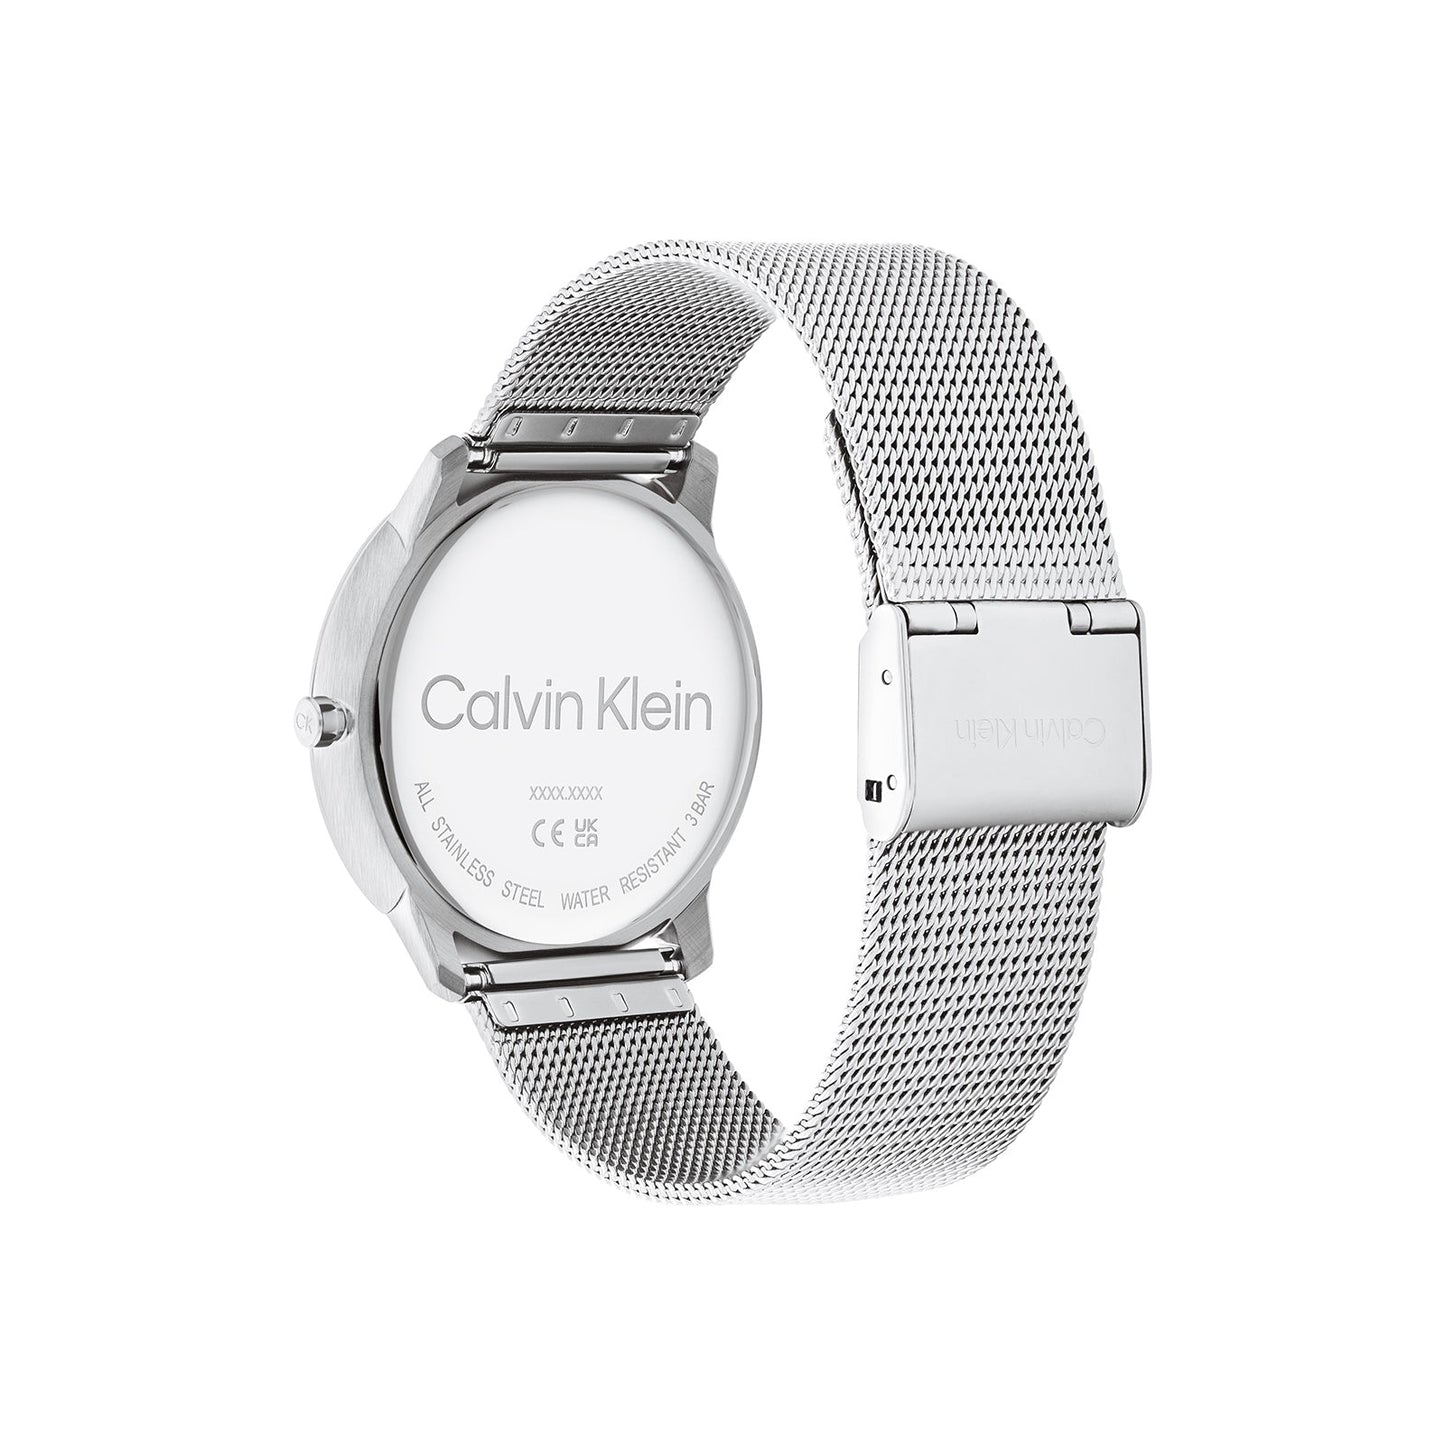 Calvin Klein 25200031 Unisex Steel Mesh Watch